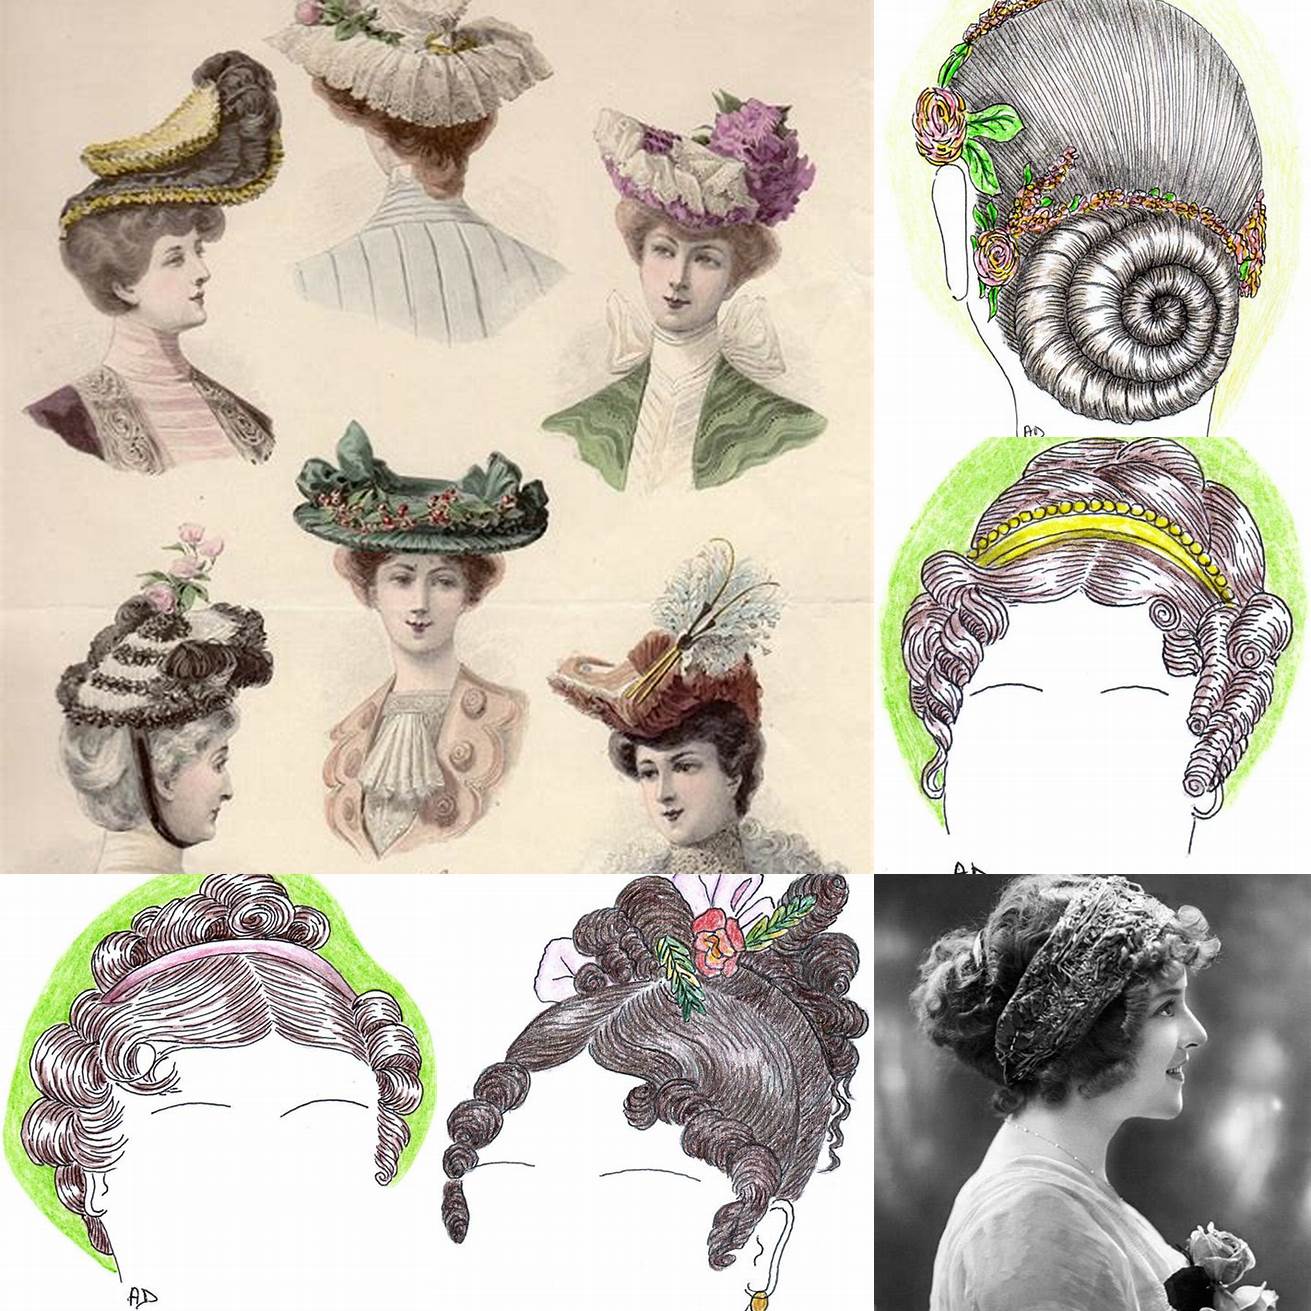 Coiffure du XIXe siècle avec une coiffure haute et bouclée décorée de rubans et de fleurs